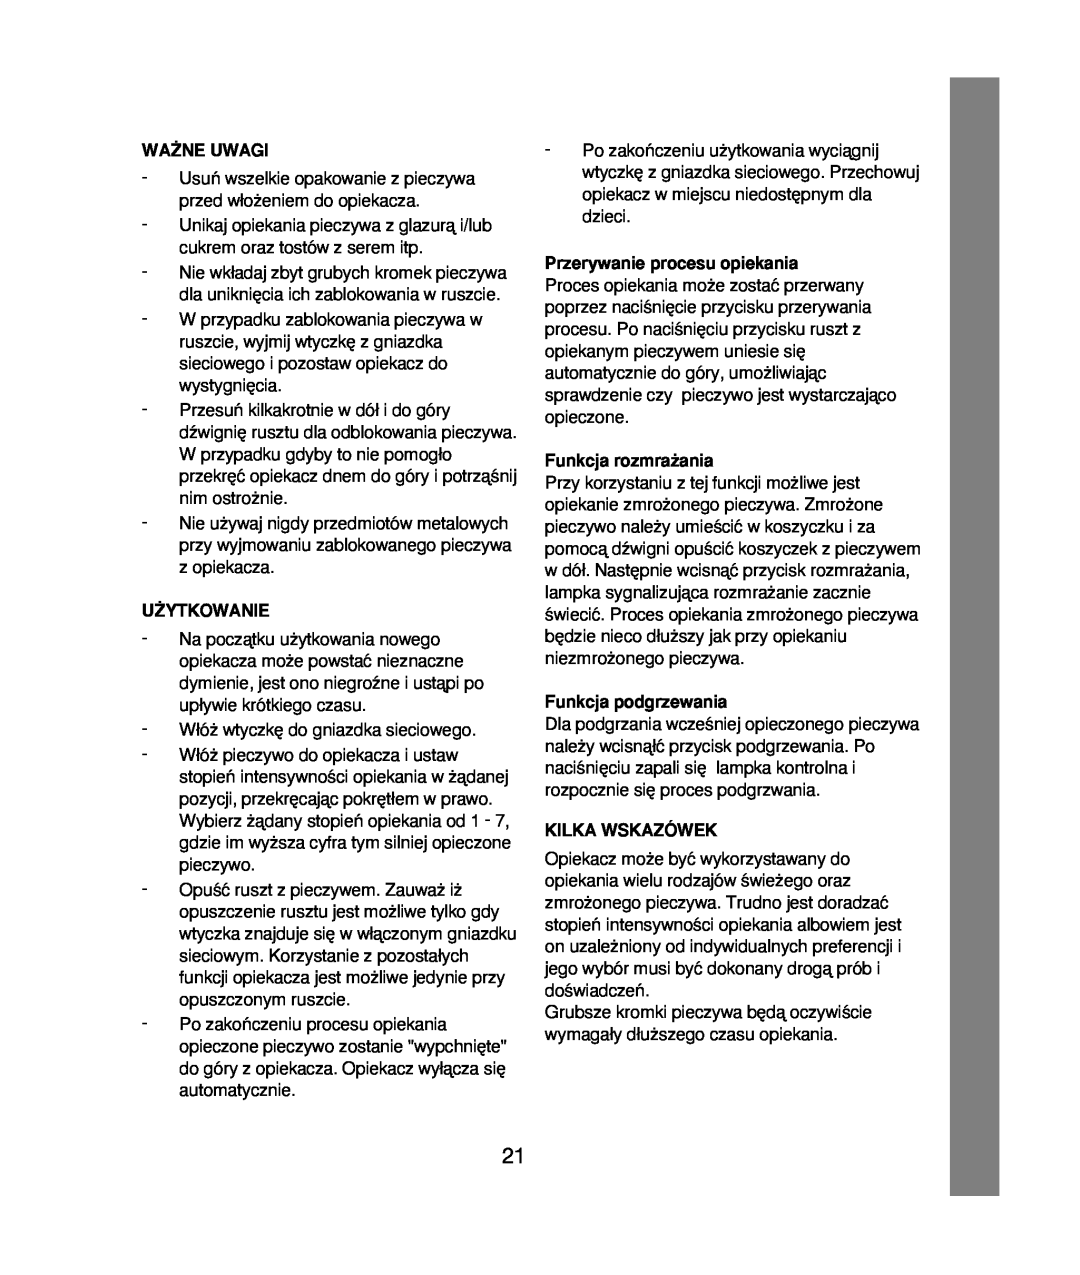 Melissa 021 & 028 manual Wa˚Ne Uwagi, U˚Ytkowanie, Przerywanie procesu opiekania, Funkcja rozmra˝ania, Funkcja podgrzewania 